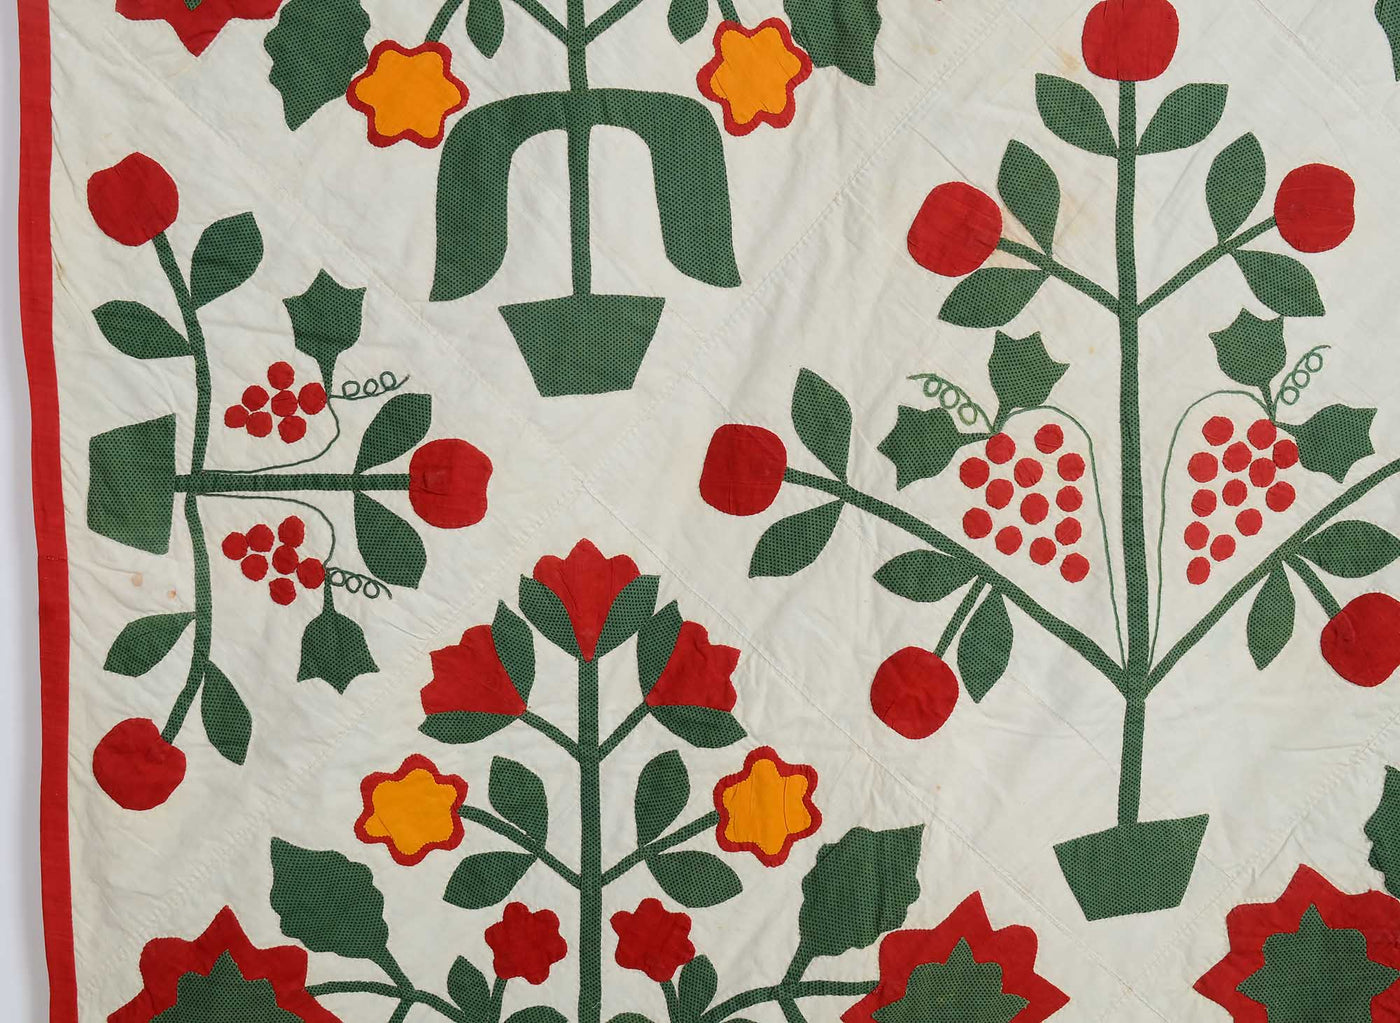 pots-of-flowers-applique-quilt-1446052-detail-4